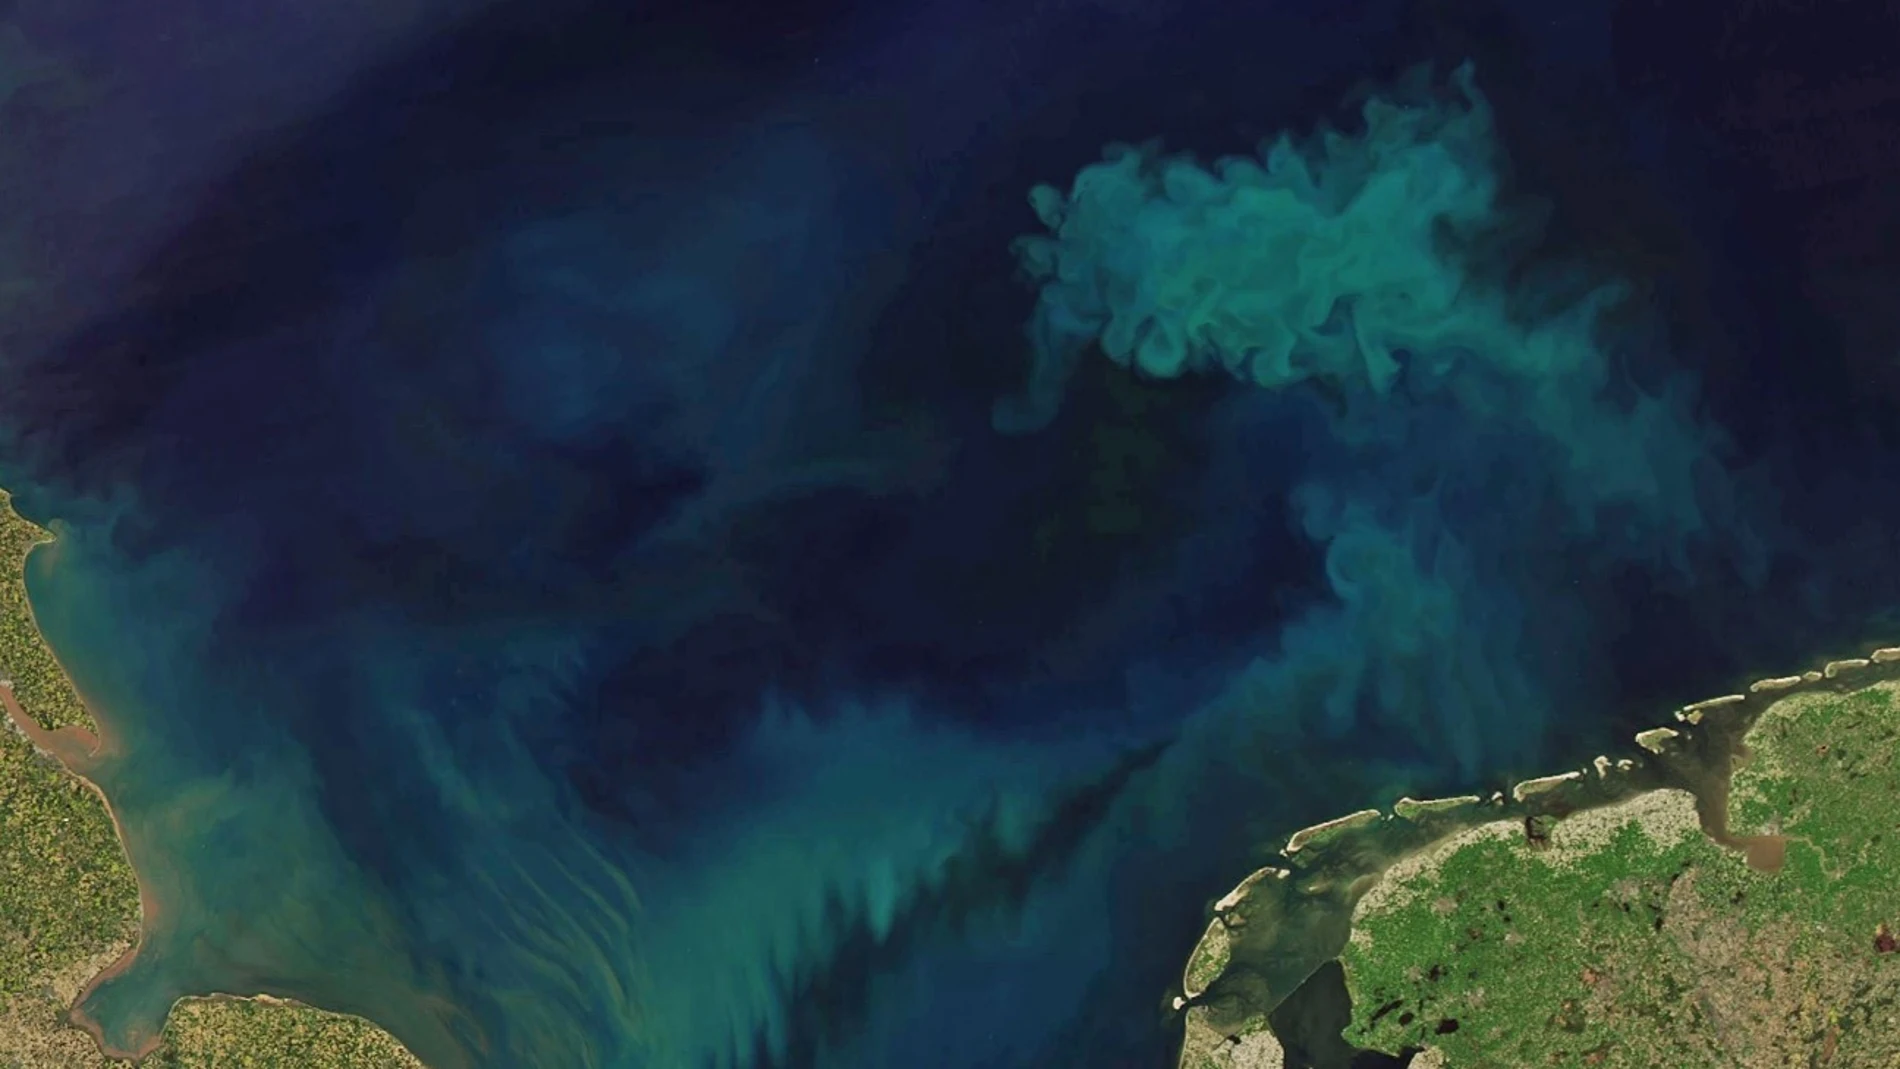 Imagen del océano realizada por la NASA y Joshua Stevens utilizando datos Landsat del U.S. Geological Survey y datos MODIS de LANCE